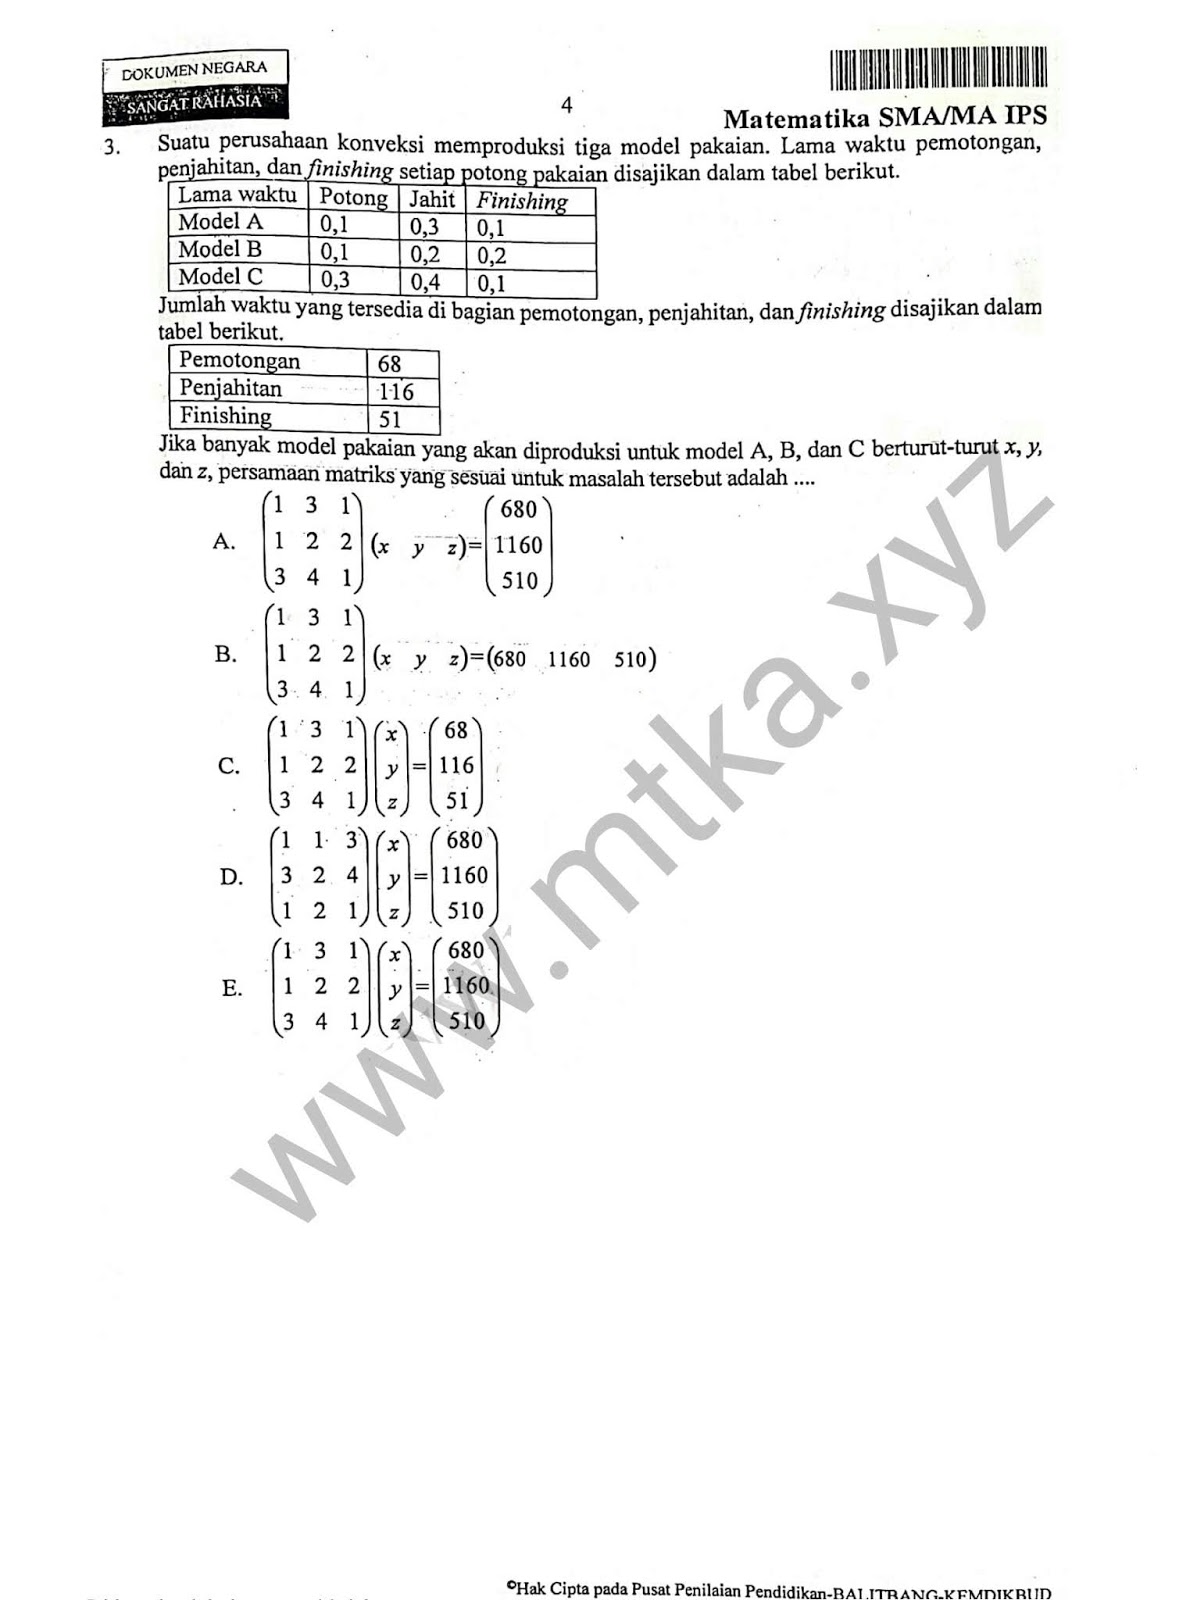 Soal Pilihan Ganda Induksi Matematika Kelas 11